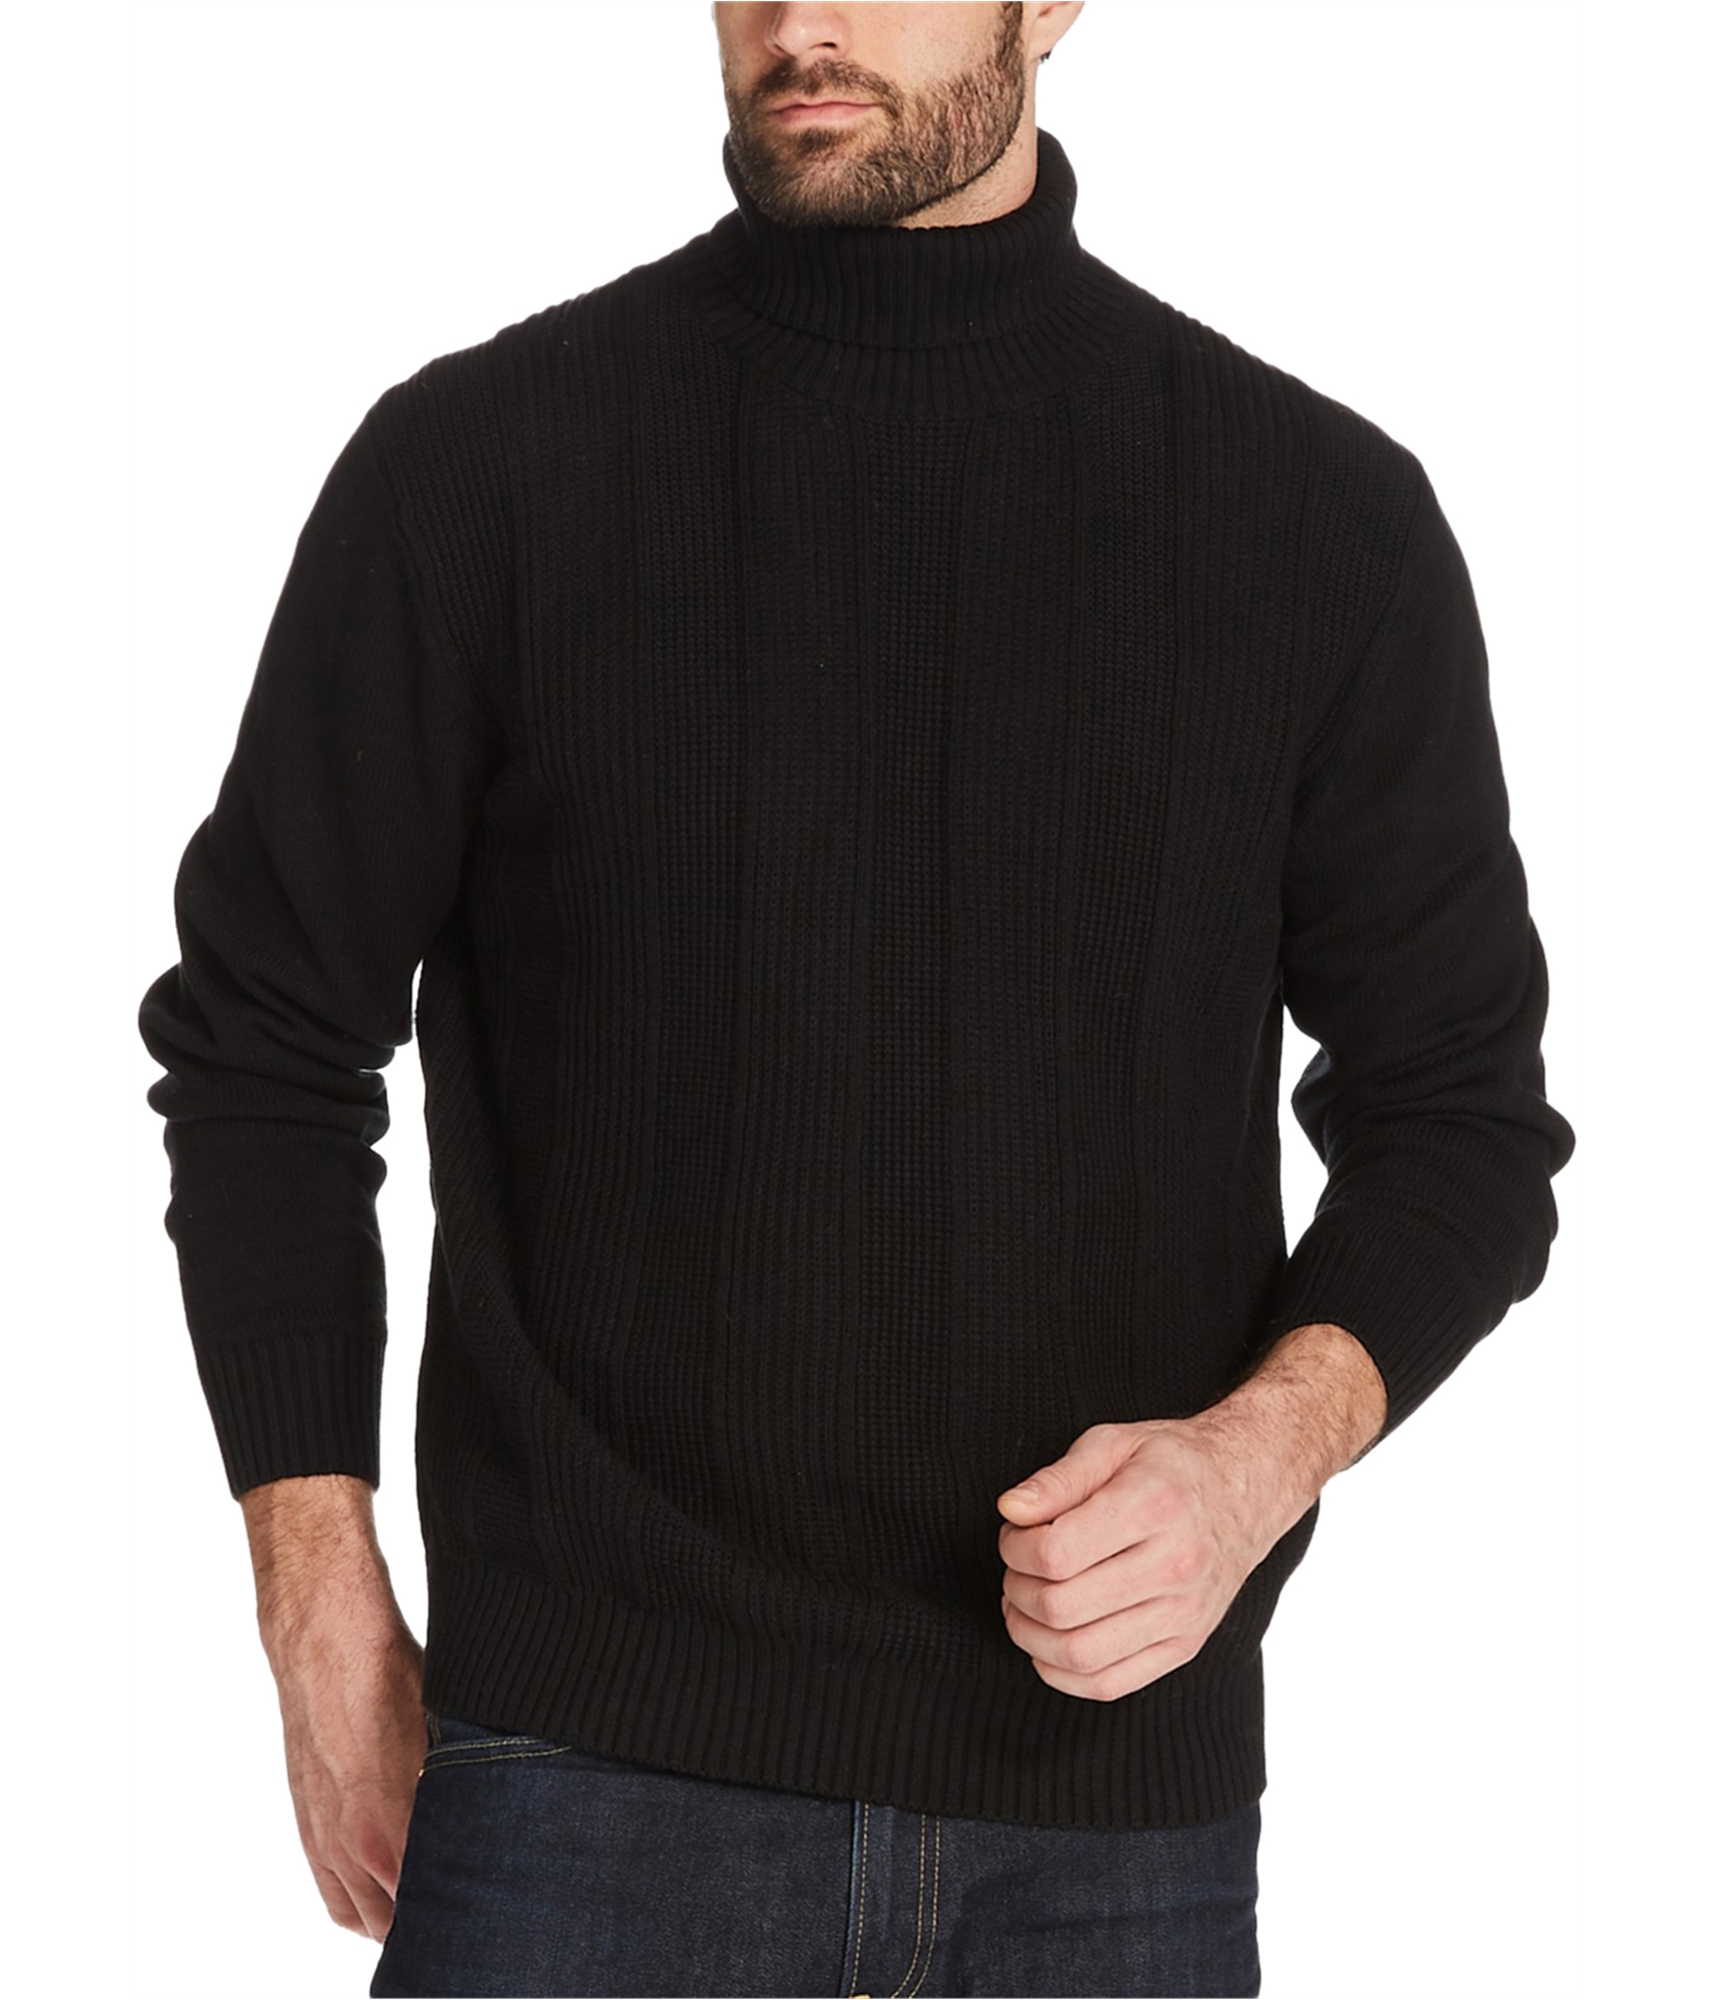 Man-wearing-turtleneck-sweater